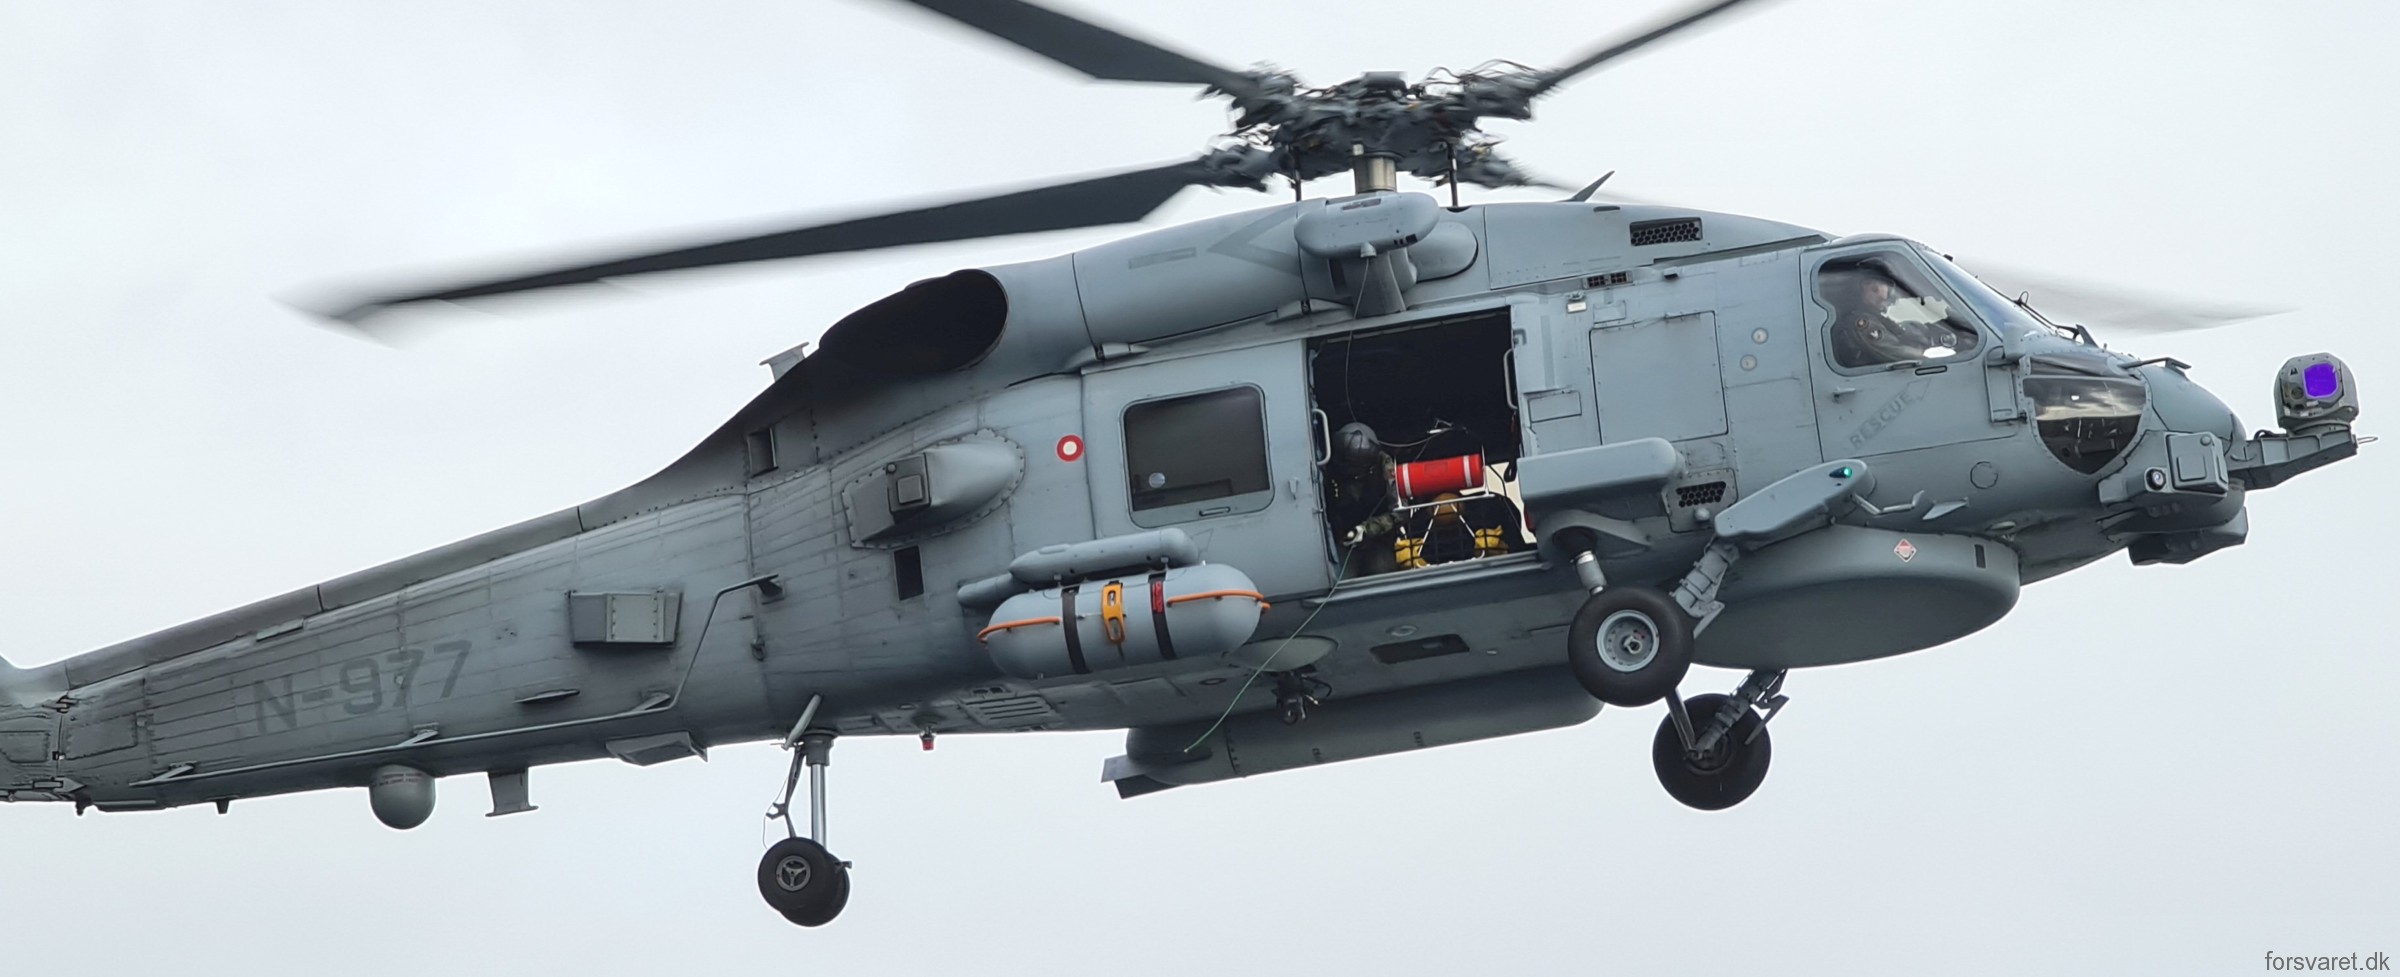 mh-60r seahawk royal danish navy air force flyvevåbnet kongelige danske marine sikorsky helicopter 723 eskadrille squadron karup 23